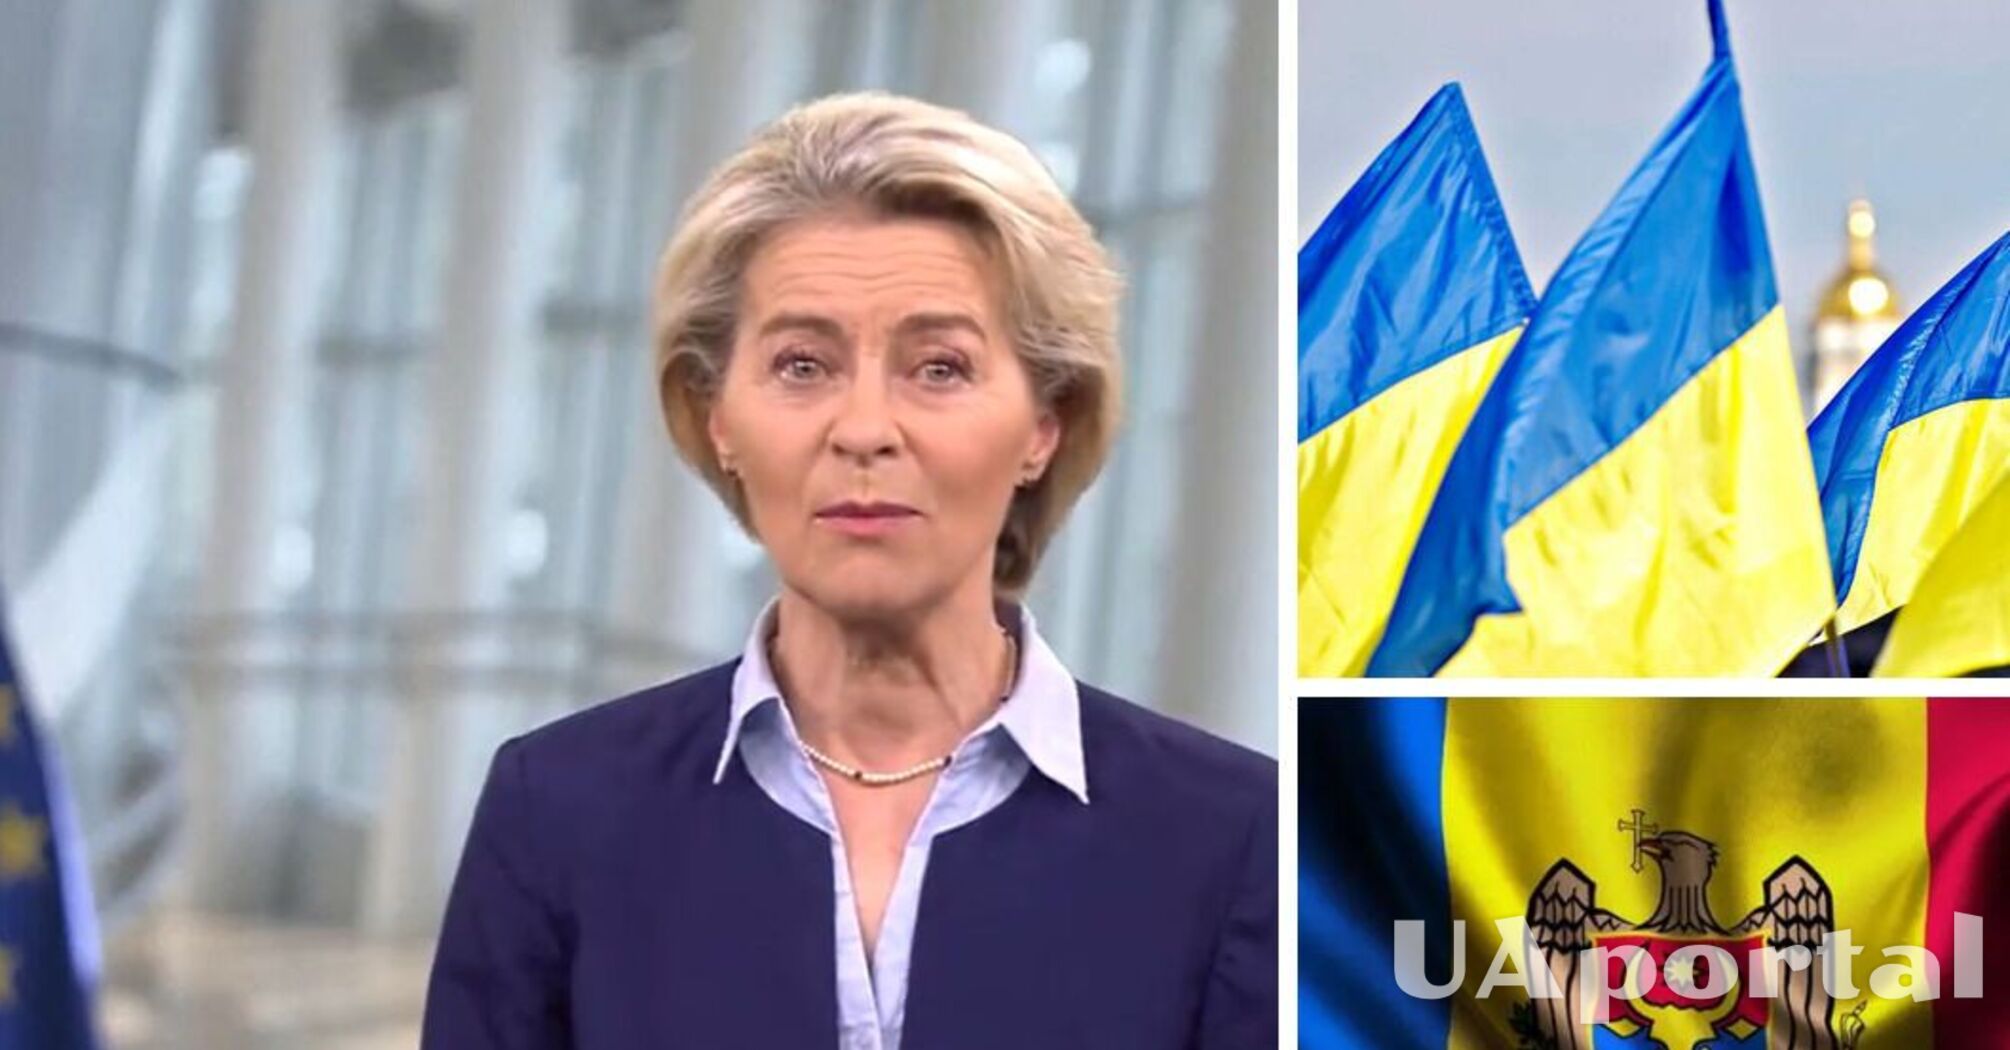 Евросоюз начал переговоры о вступлении Украины и Молдовы в ЕС – Урсула фон дер Ляен (видео)